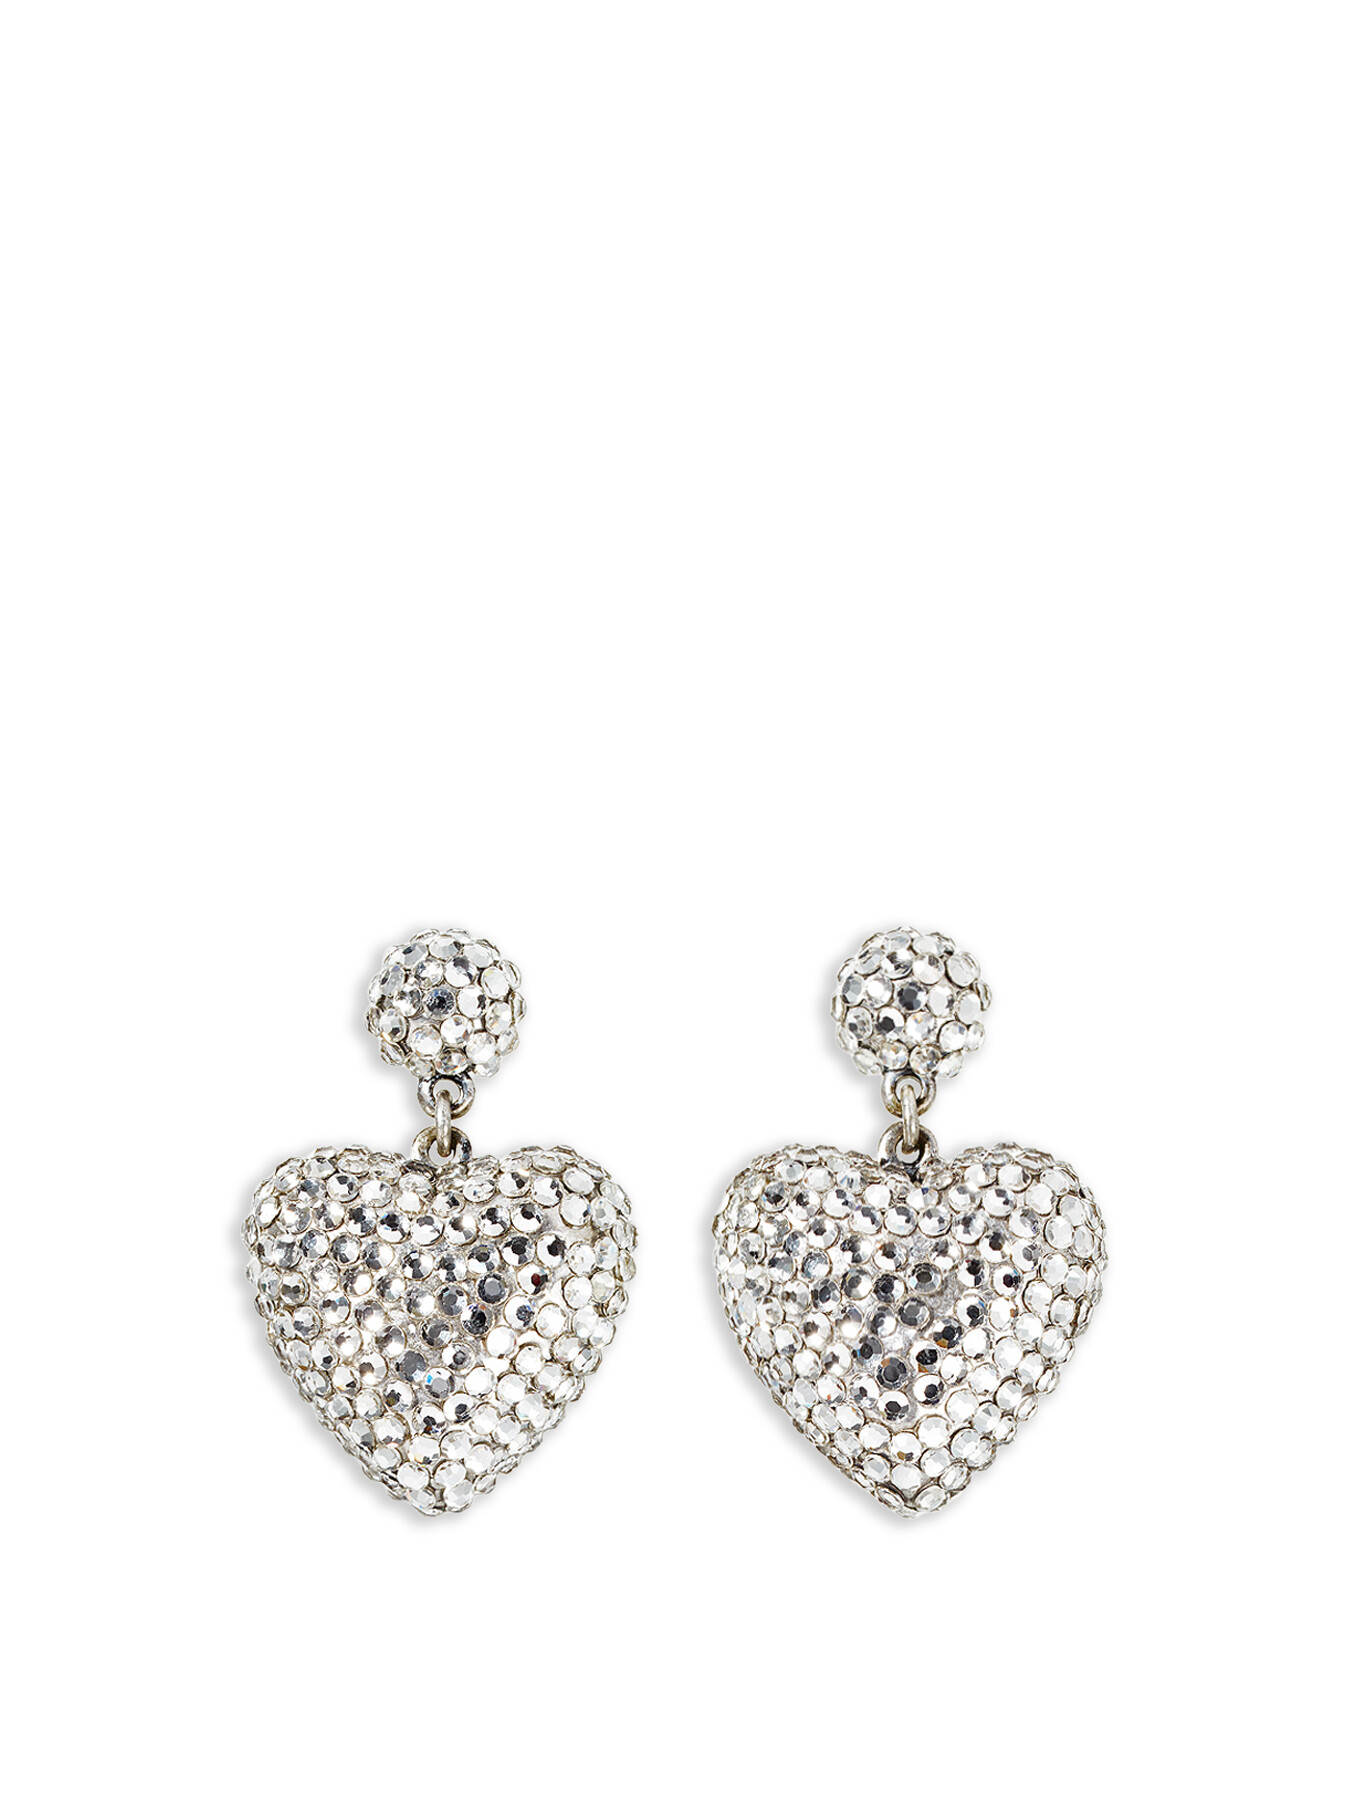 Roxanne Assoulin Women's Heart And Soul Crystal Earrings Silver